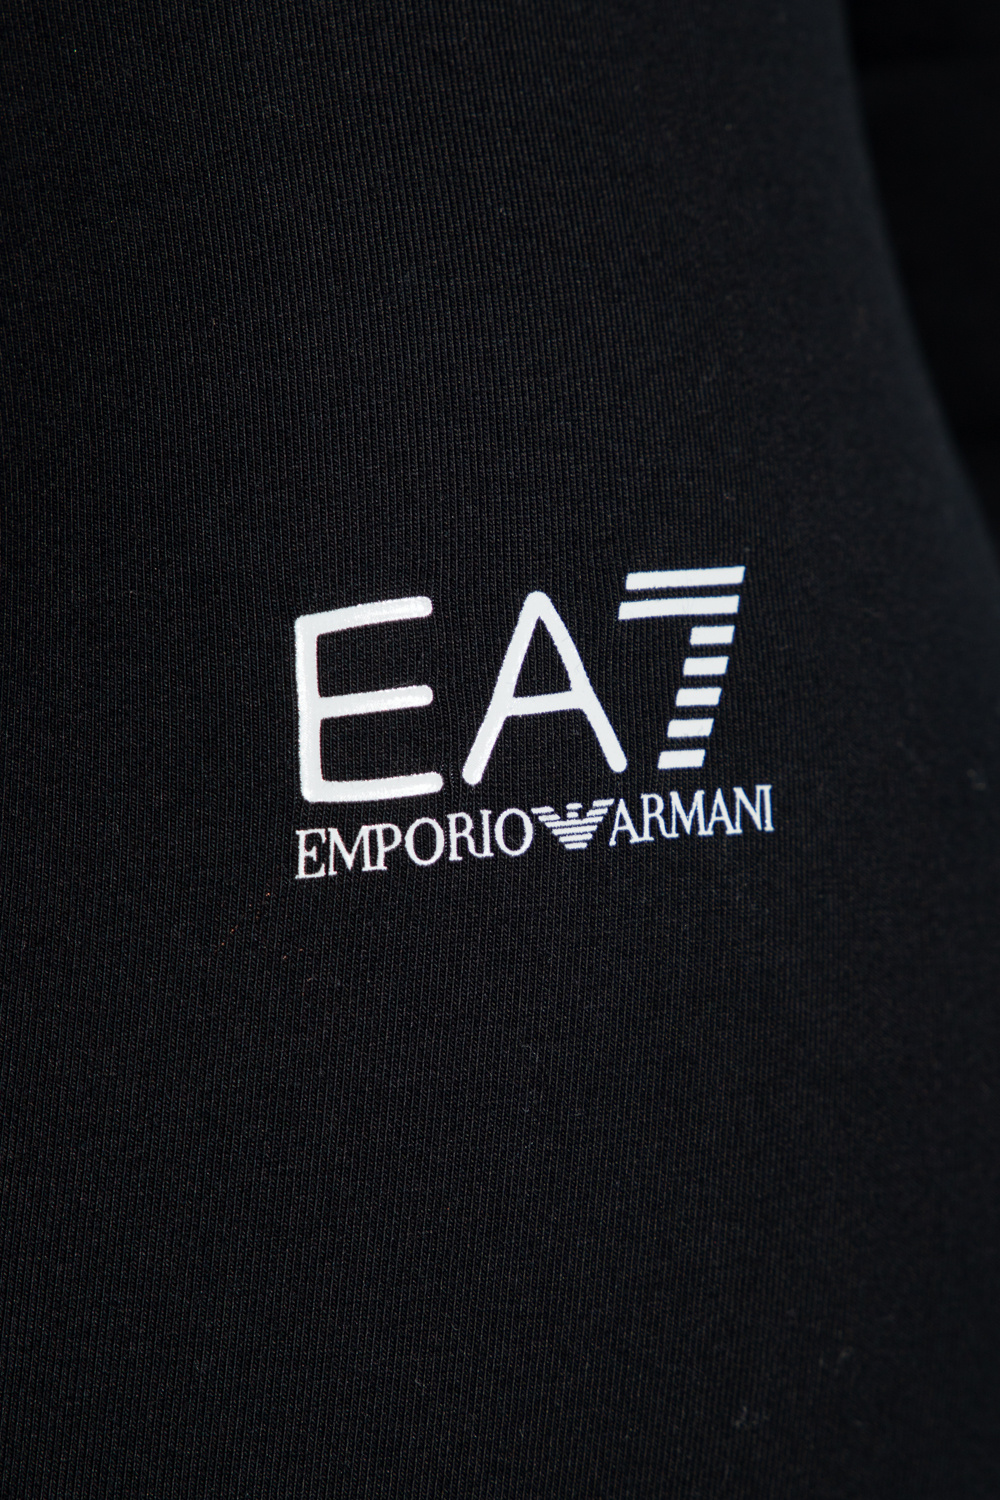 EA7 Emporio Armani Gafas De Sol Emporio Armani